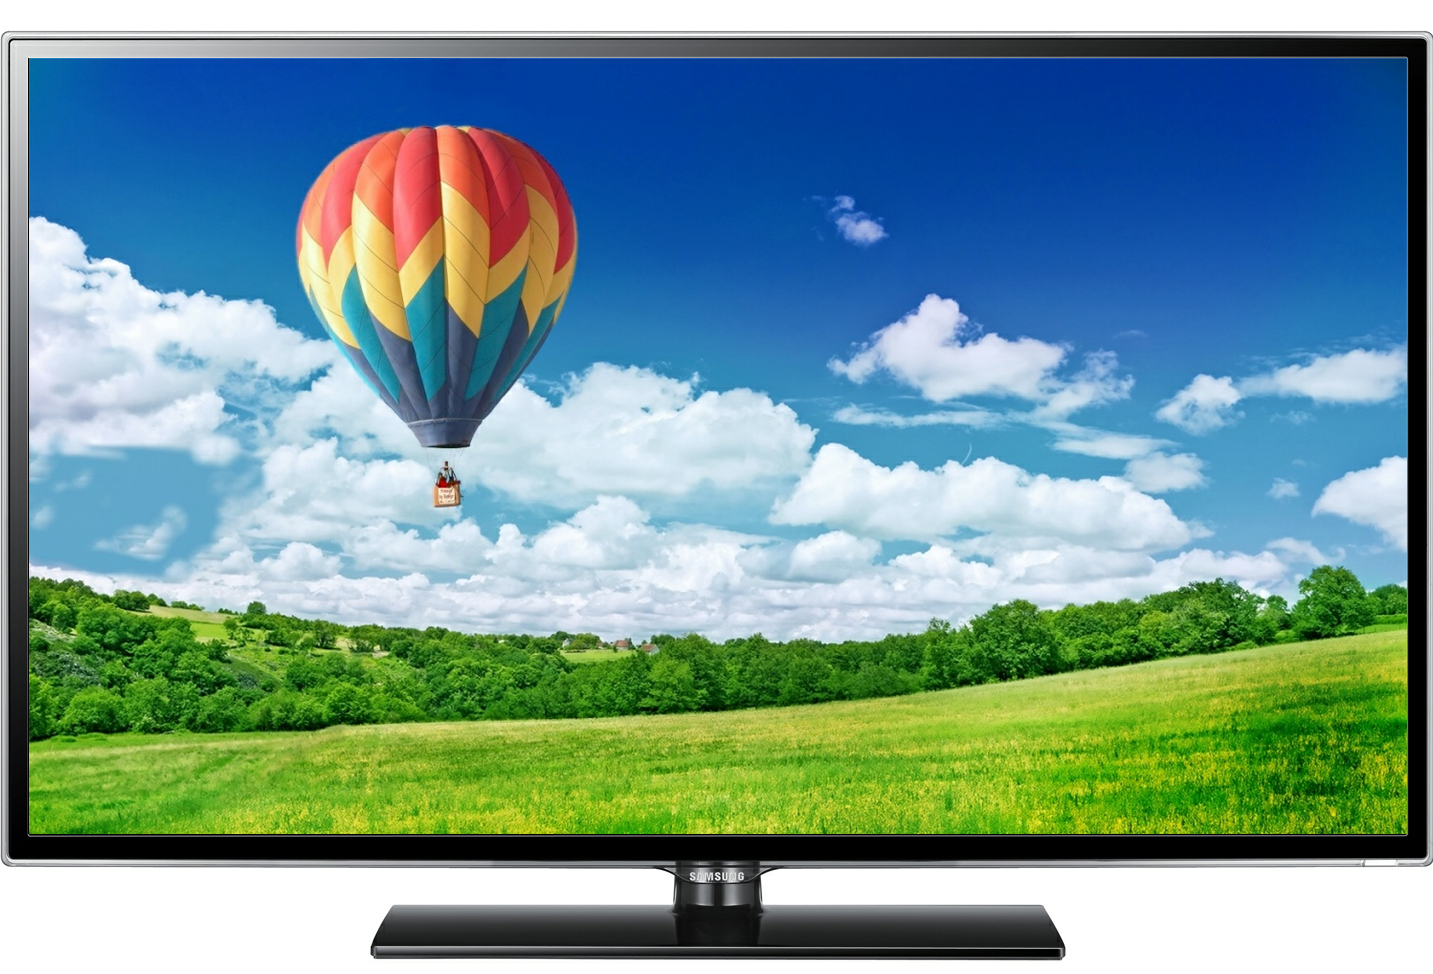 Tivi LED giá rẻ Smart TV giá tốt dưới 10 triệu tại Hà Nội